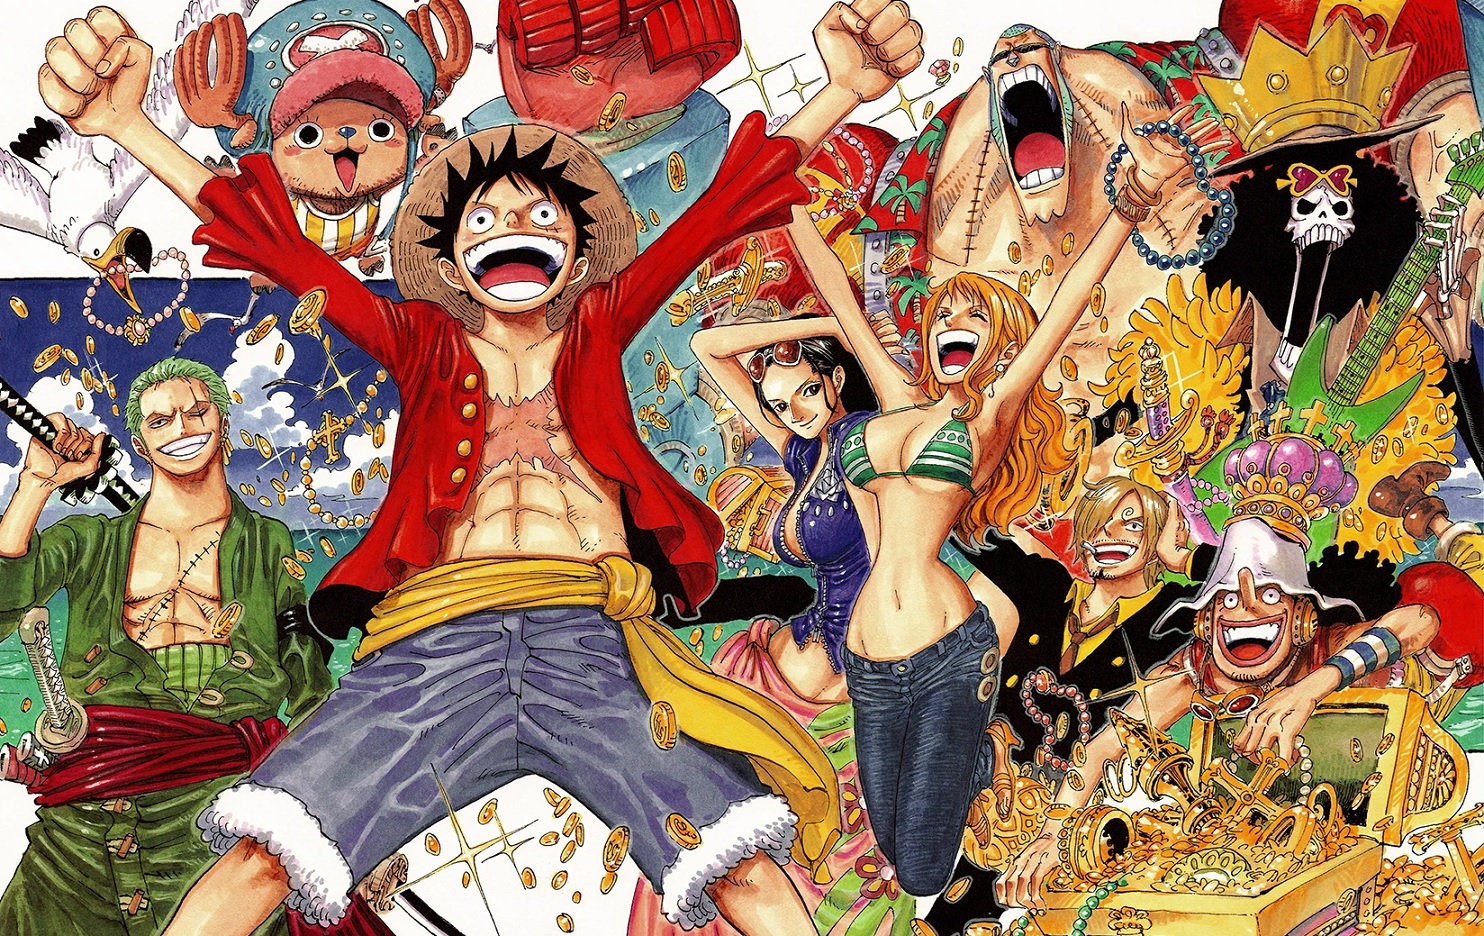 Editor de One Piece relembra quando Eiichiro Oda o contou o maior mistério da obra